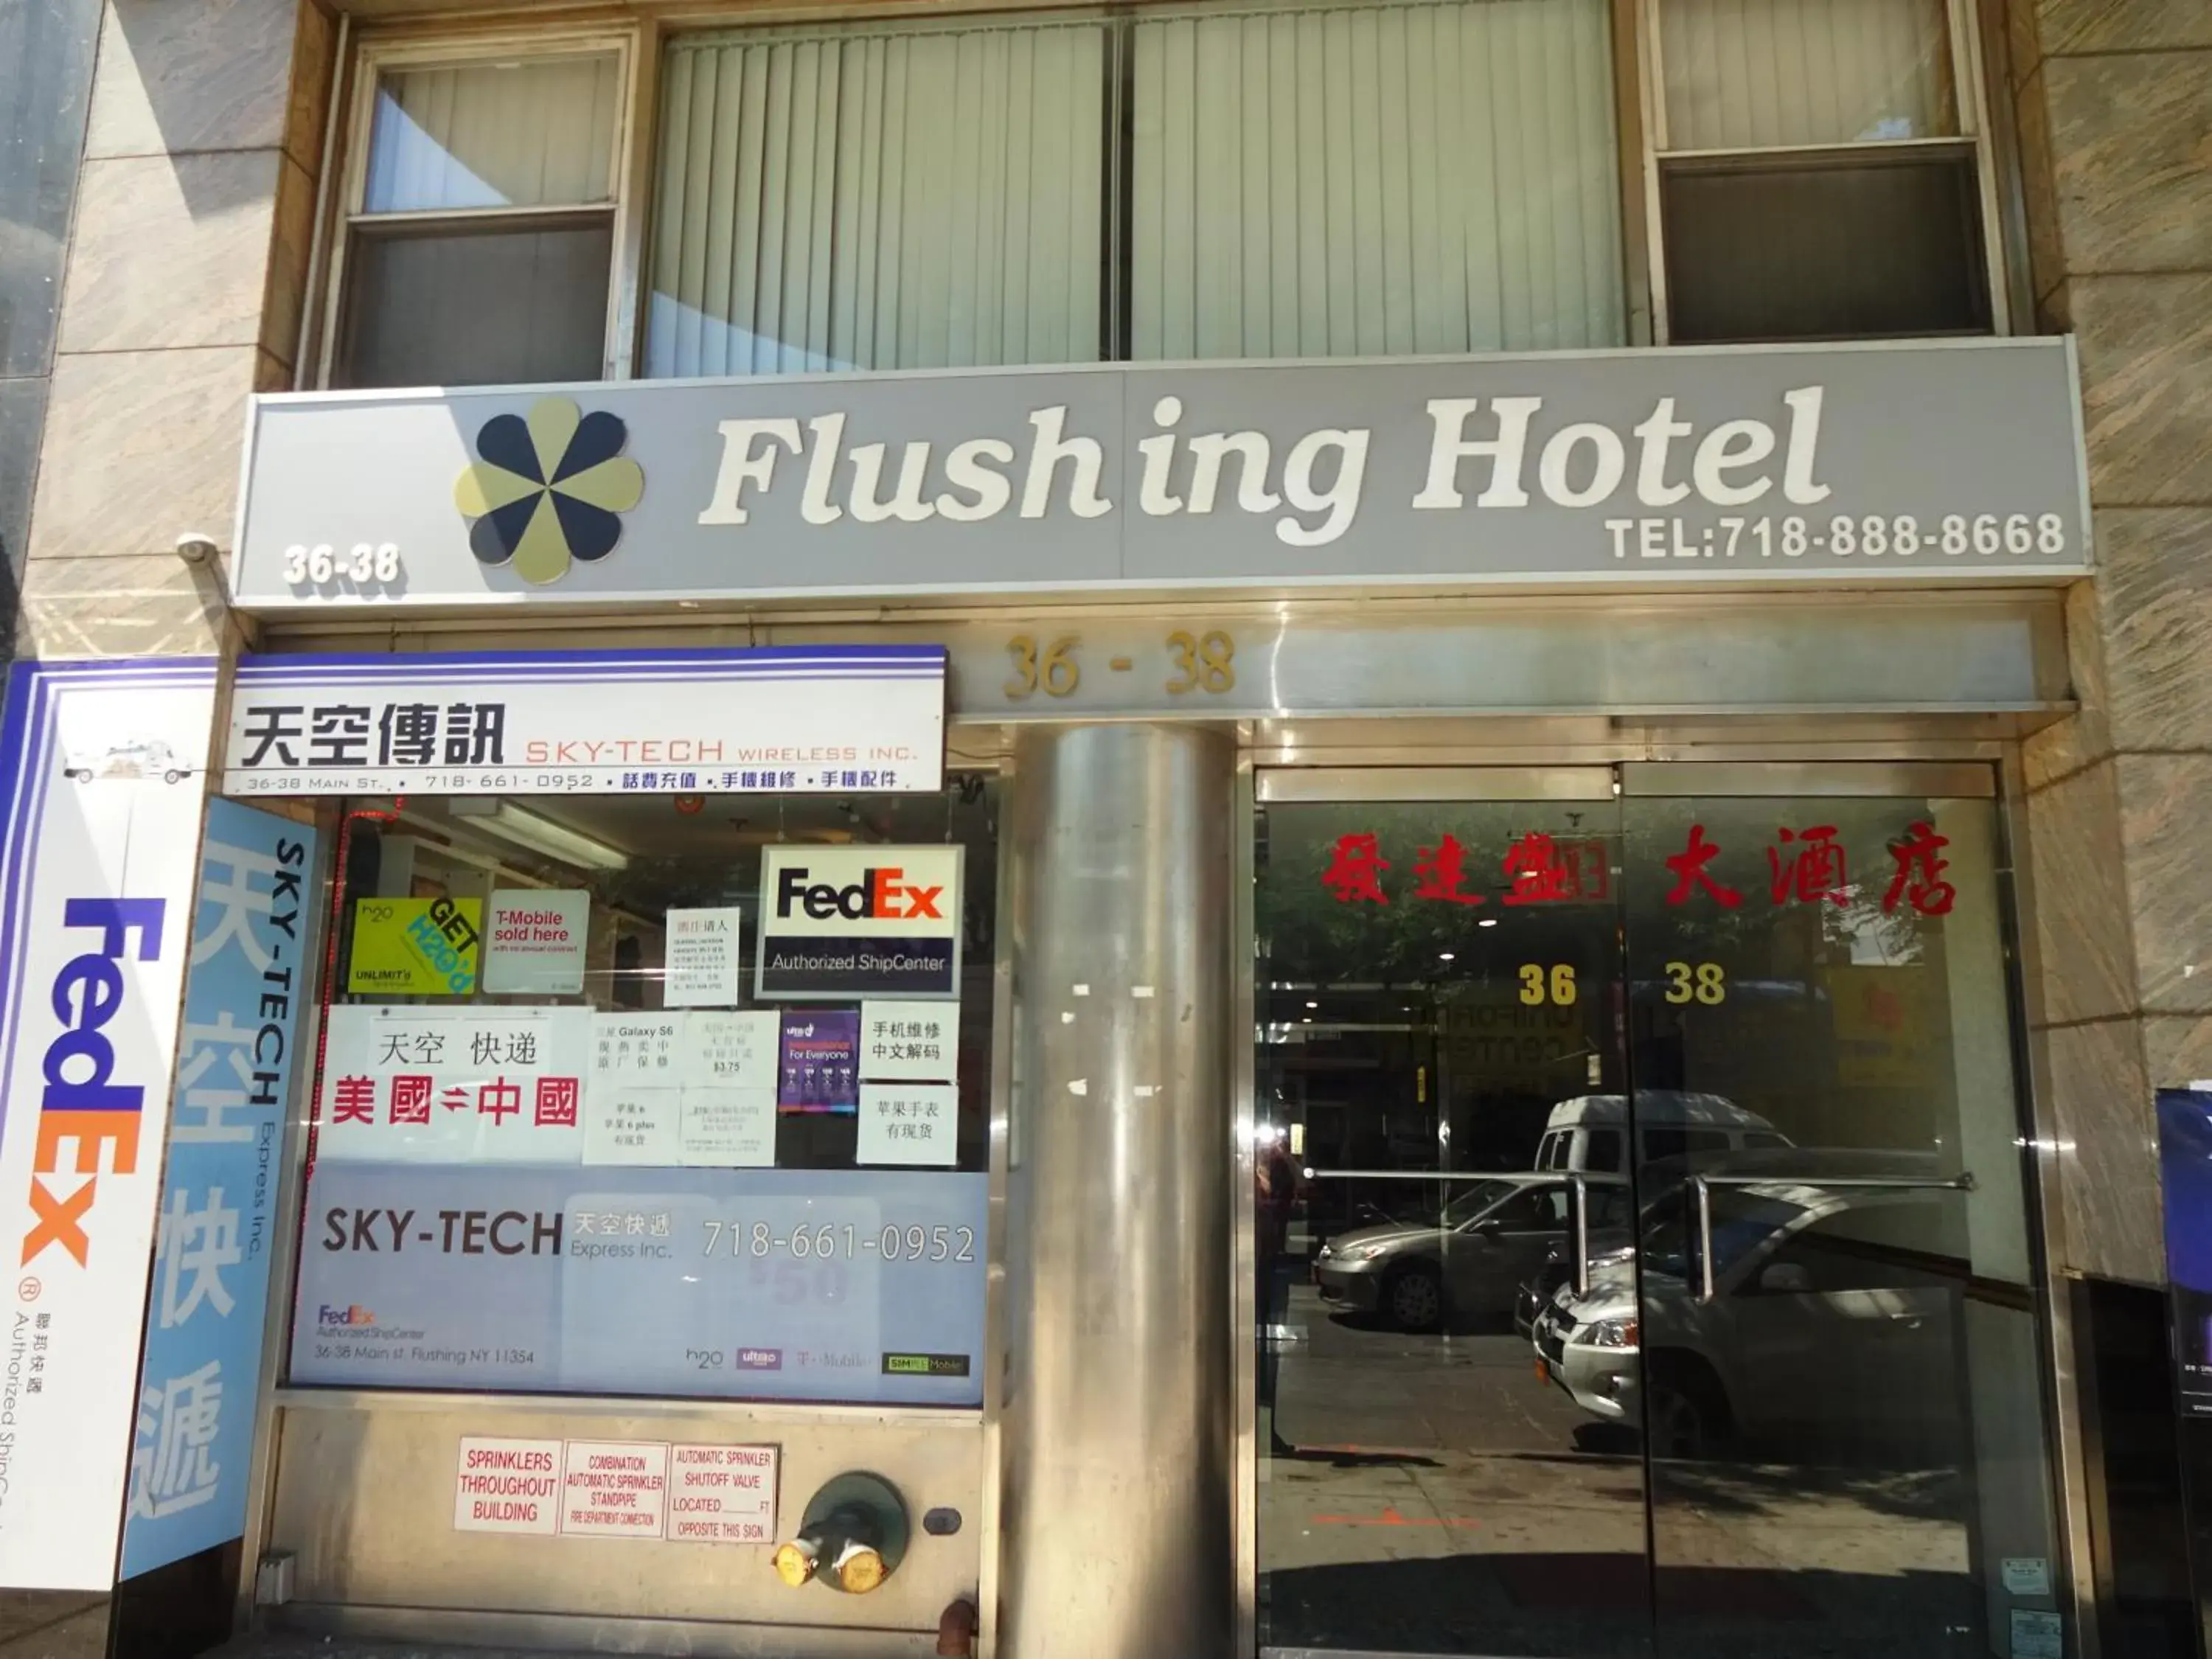 Facade/entrance in Flushing Hotel